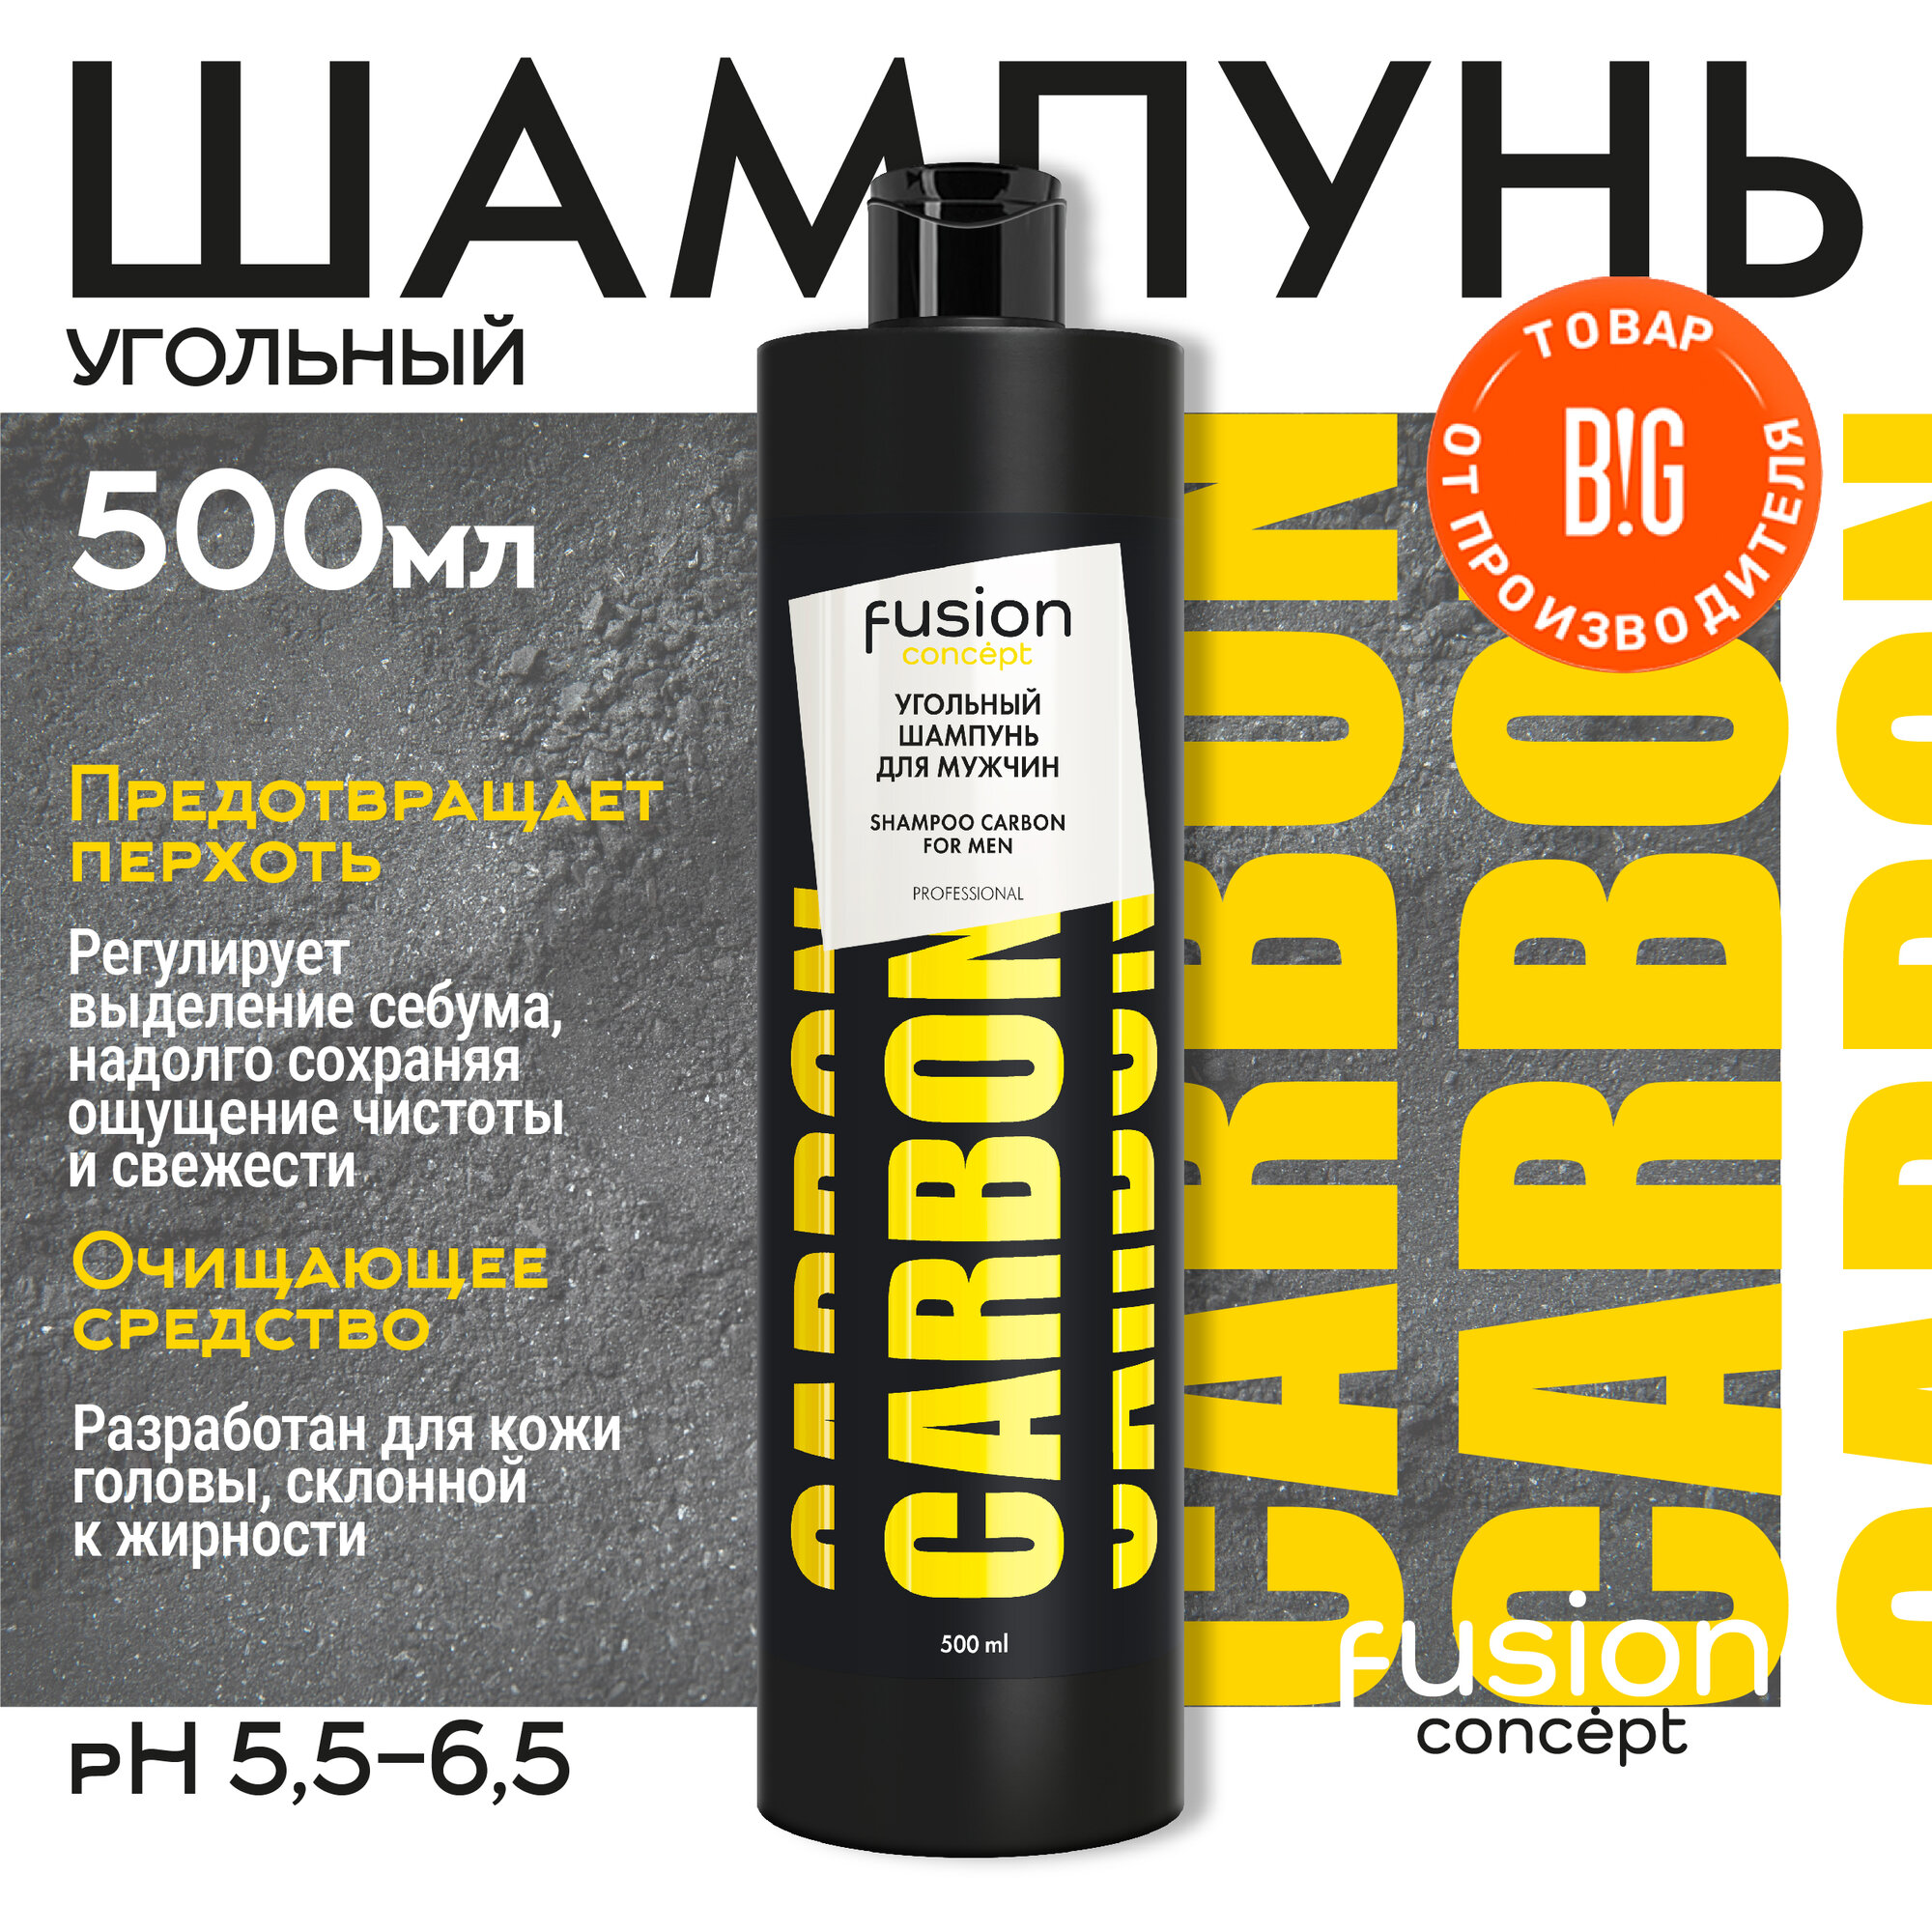 Concept Fusion Угольный шампунь для мужчин SHAMPOO CARBON FOR MEN для профессионального применения, 500мл